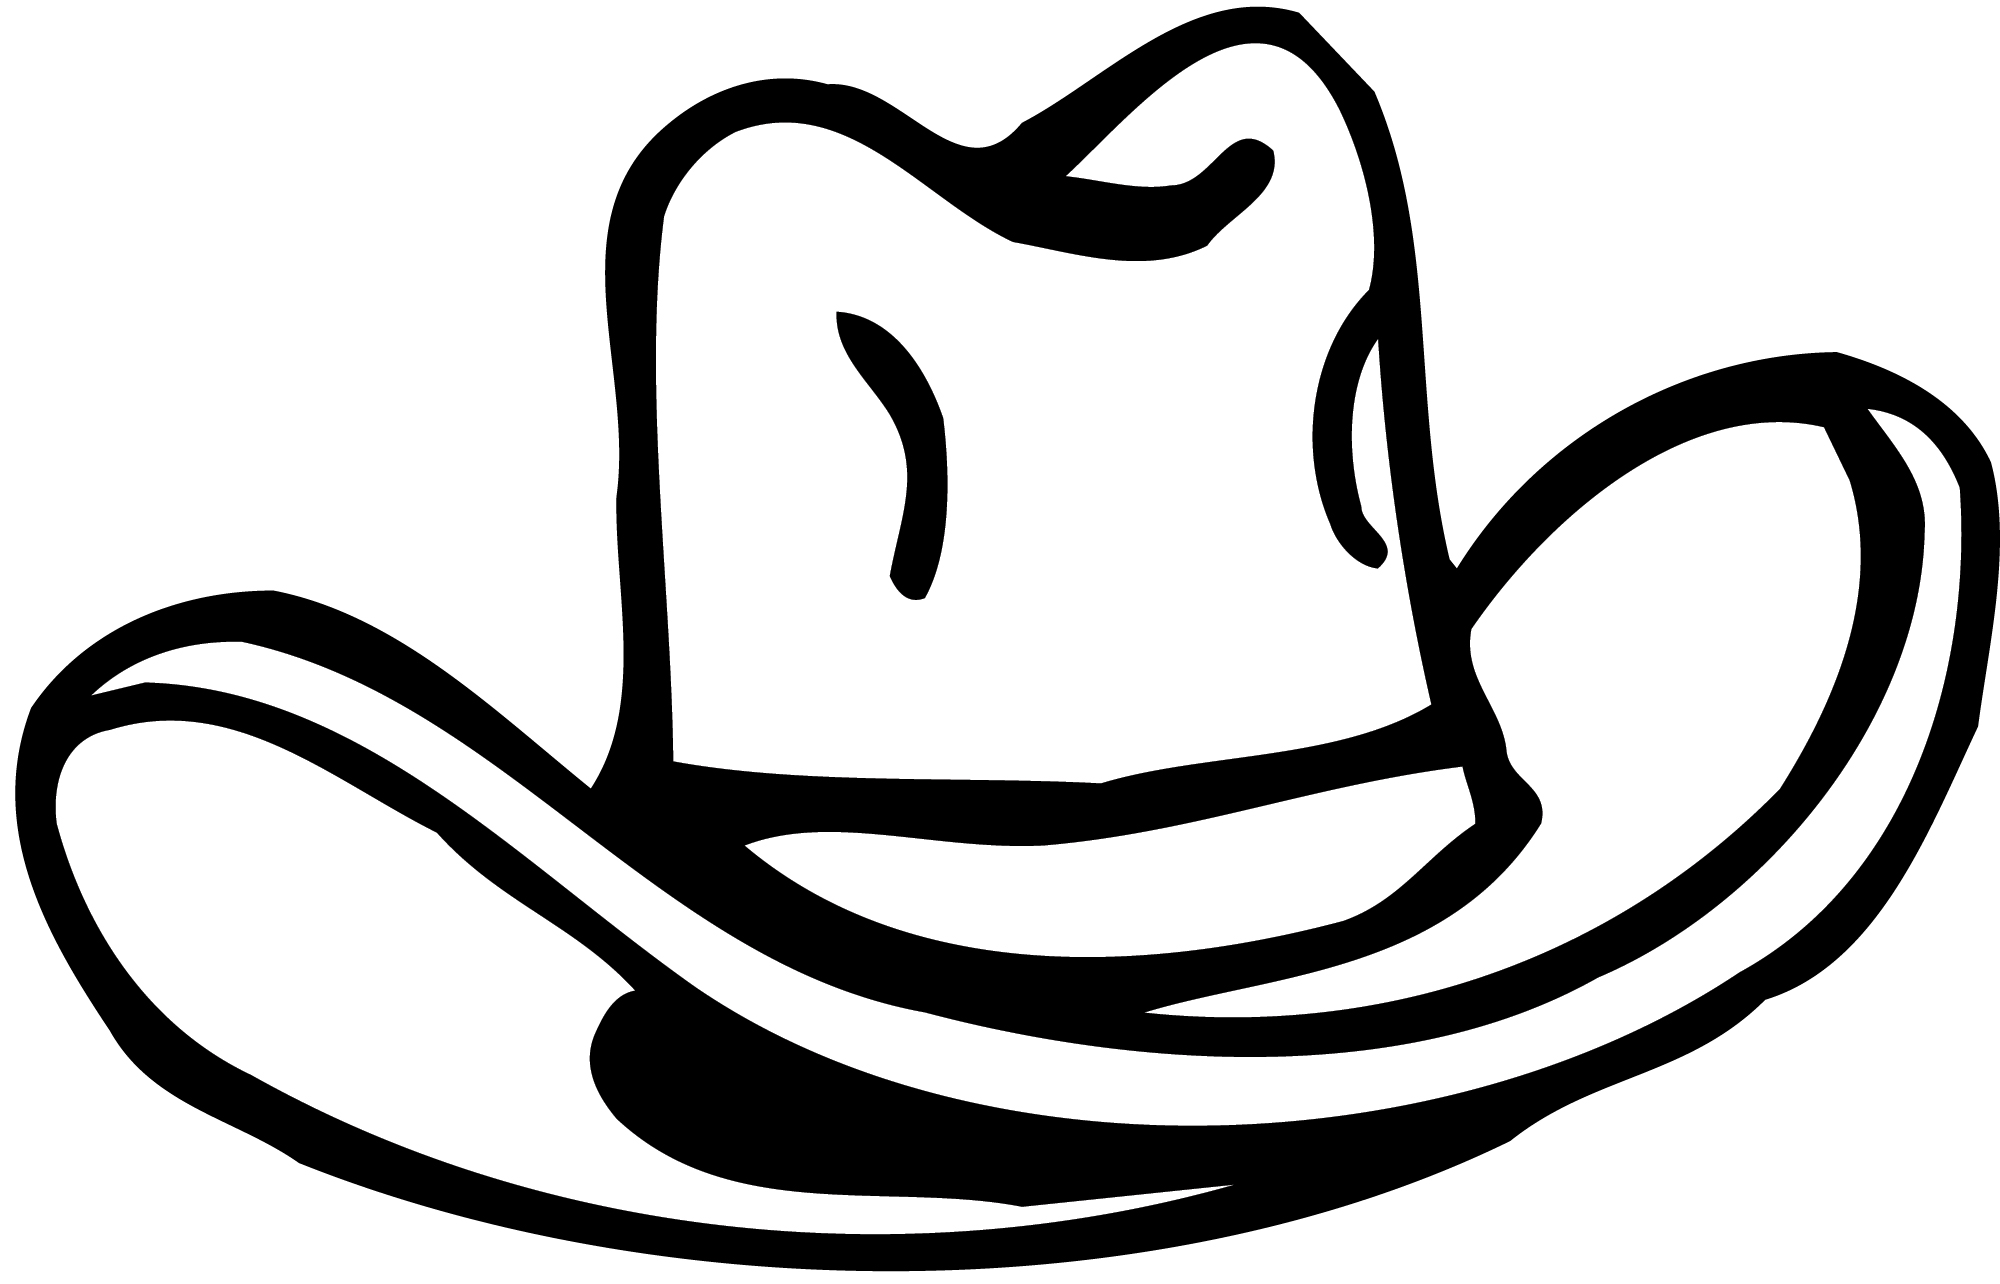 clip art of cowboy hat shapes